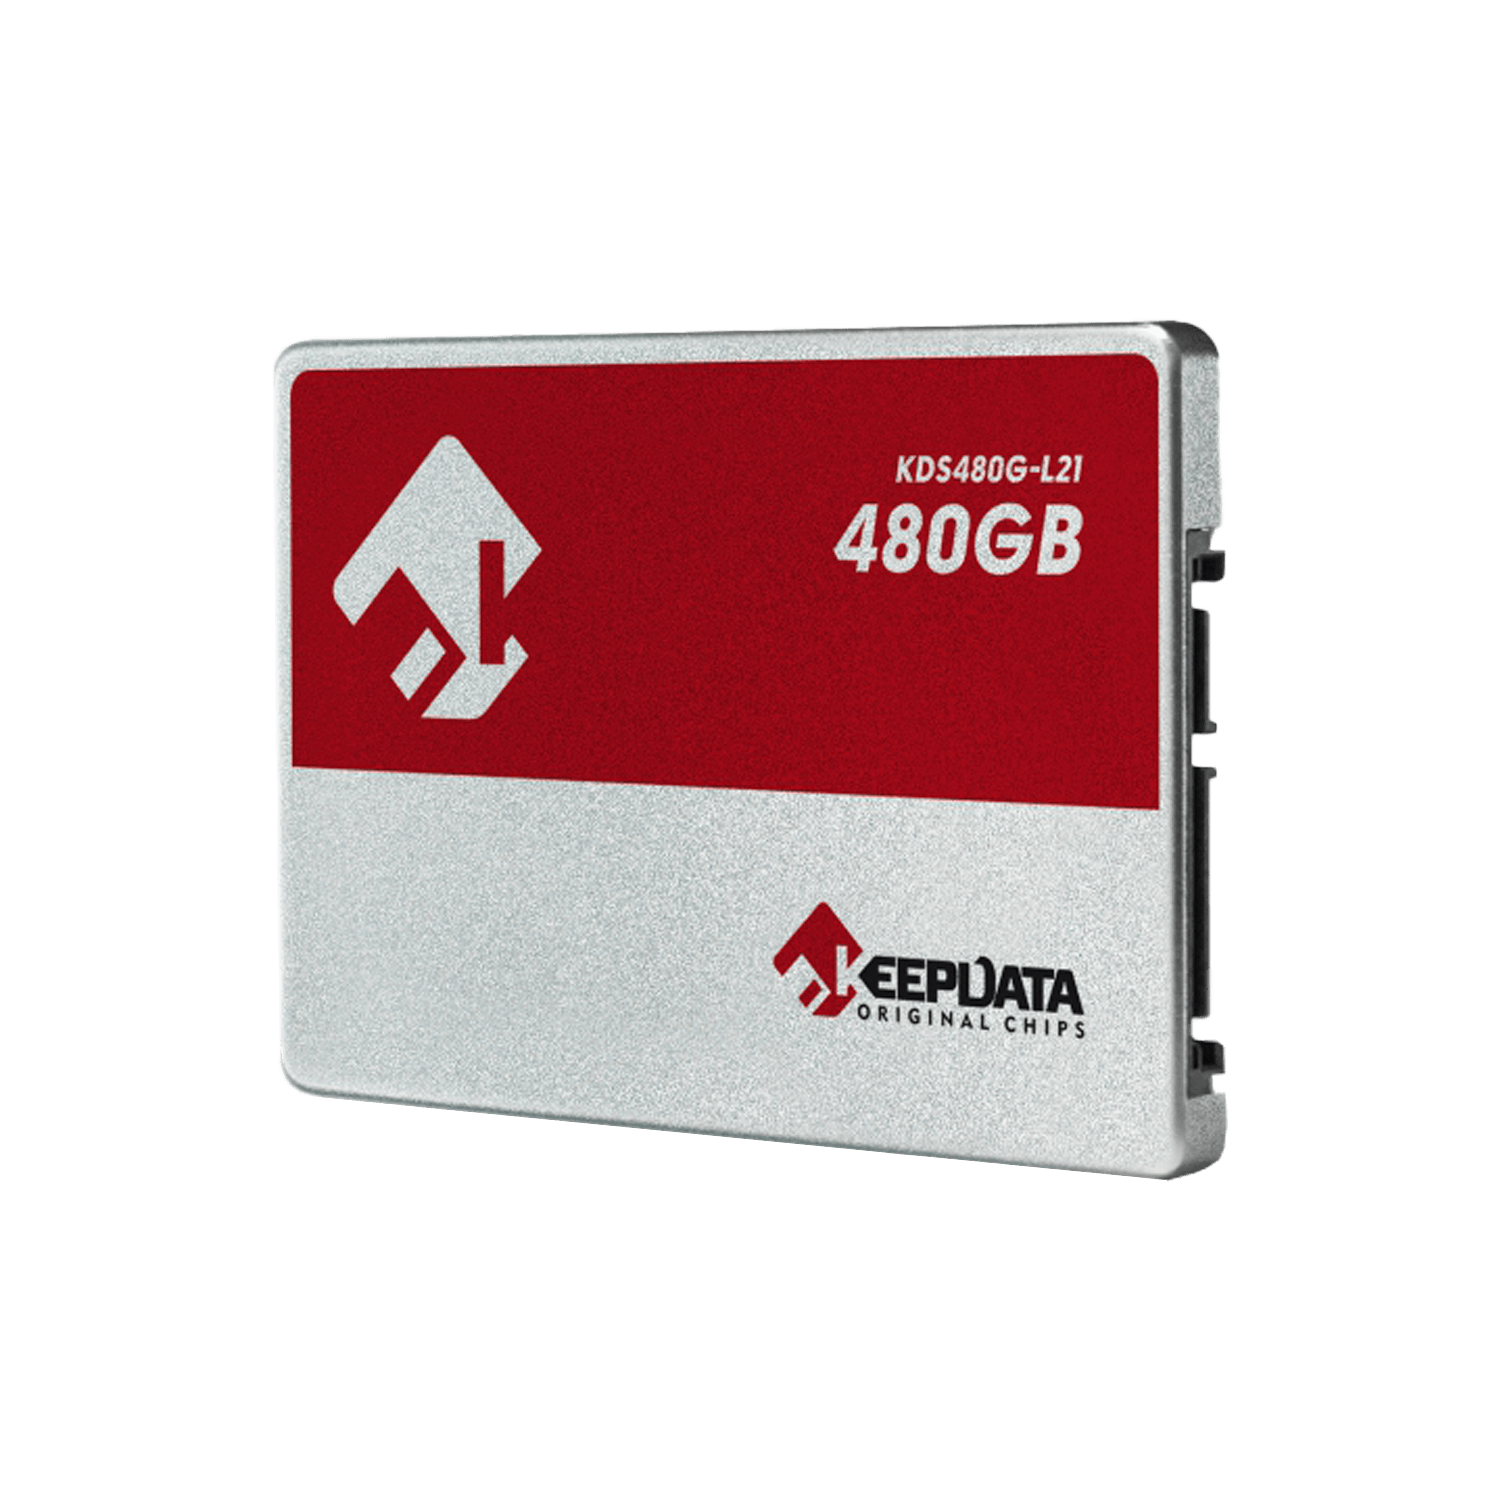 SSD Keepdata 480GB 2.5" SATA 3 - KDS480G-L21